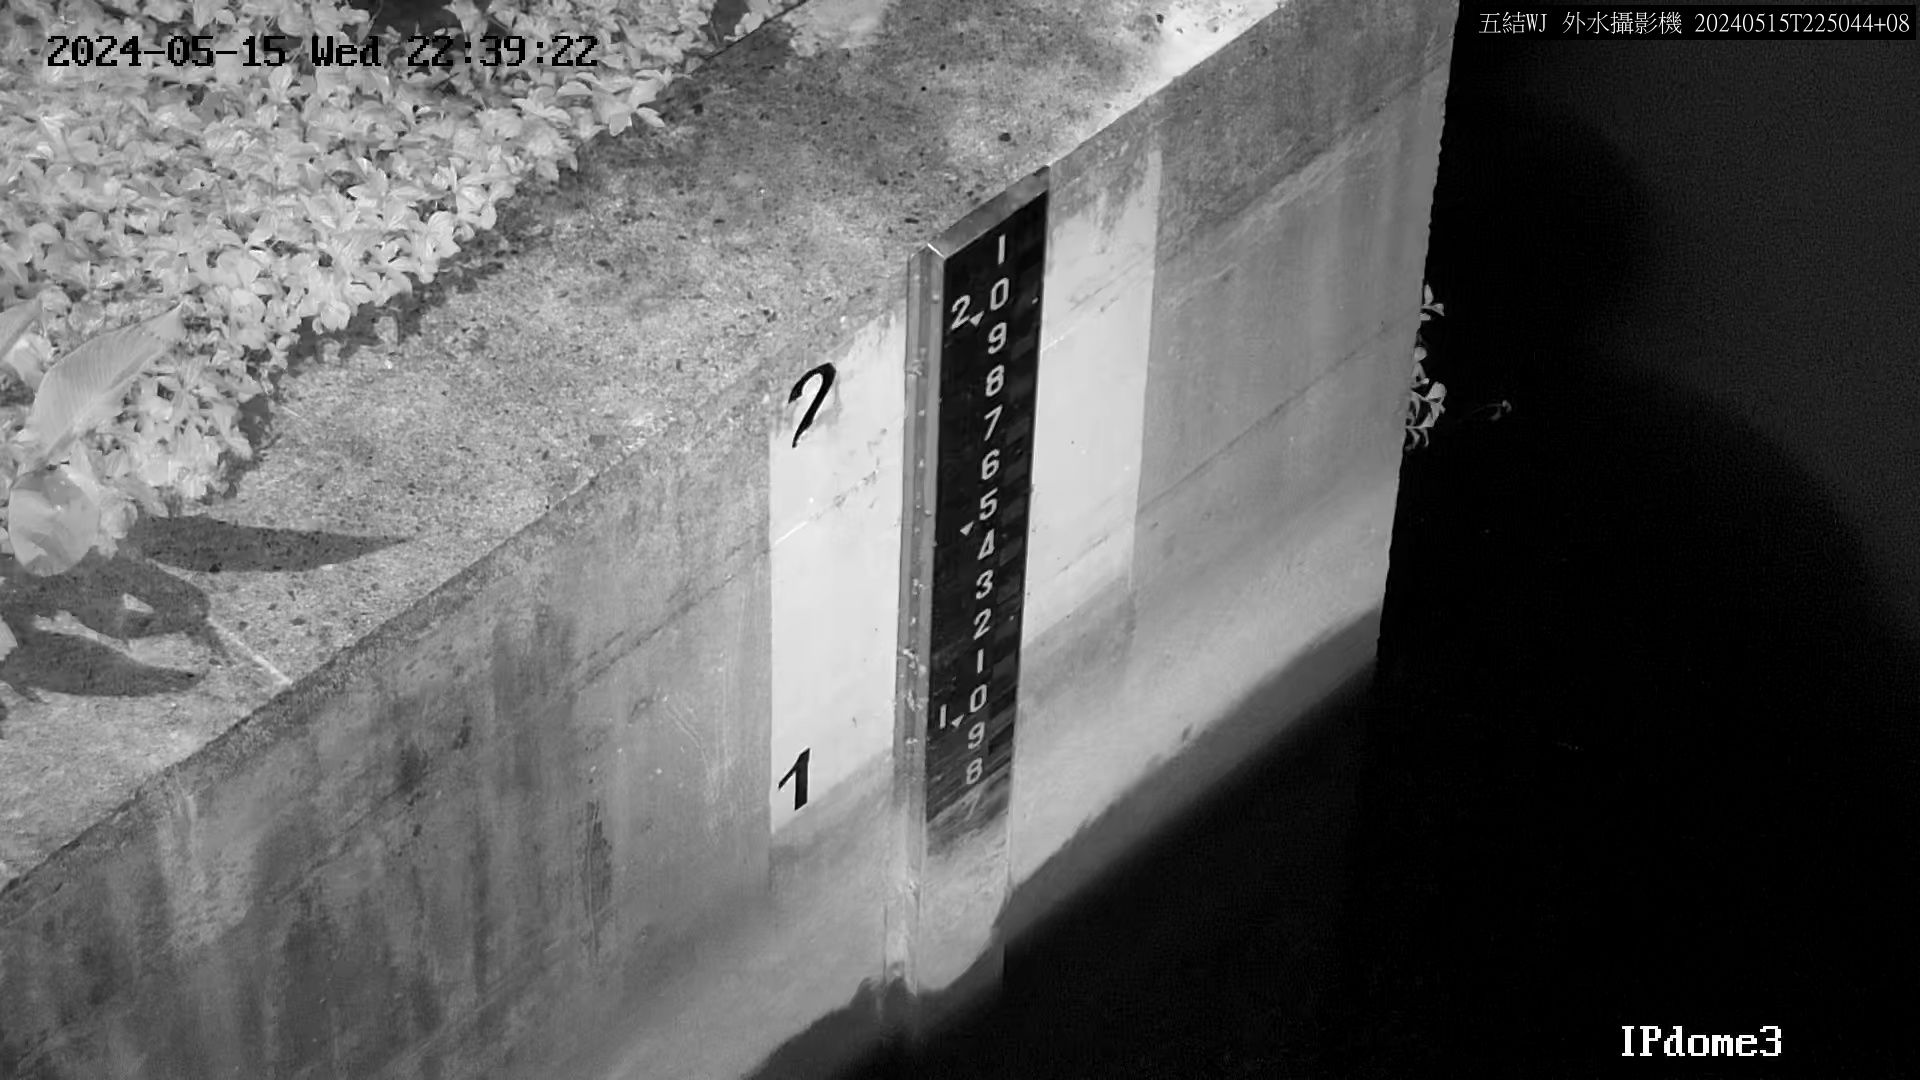 水利署水資源  一河局 五結副閘排水防潮閘門外水位 距離2.1公里 氣溫26.6度